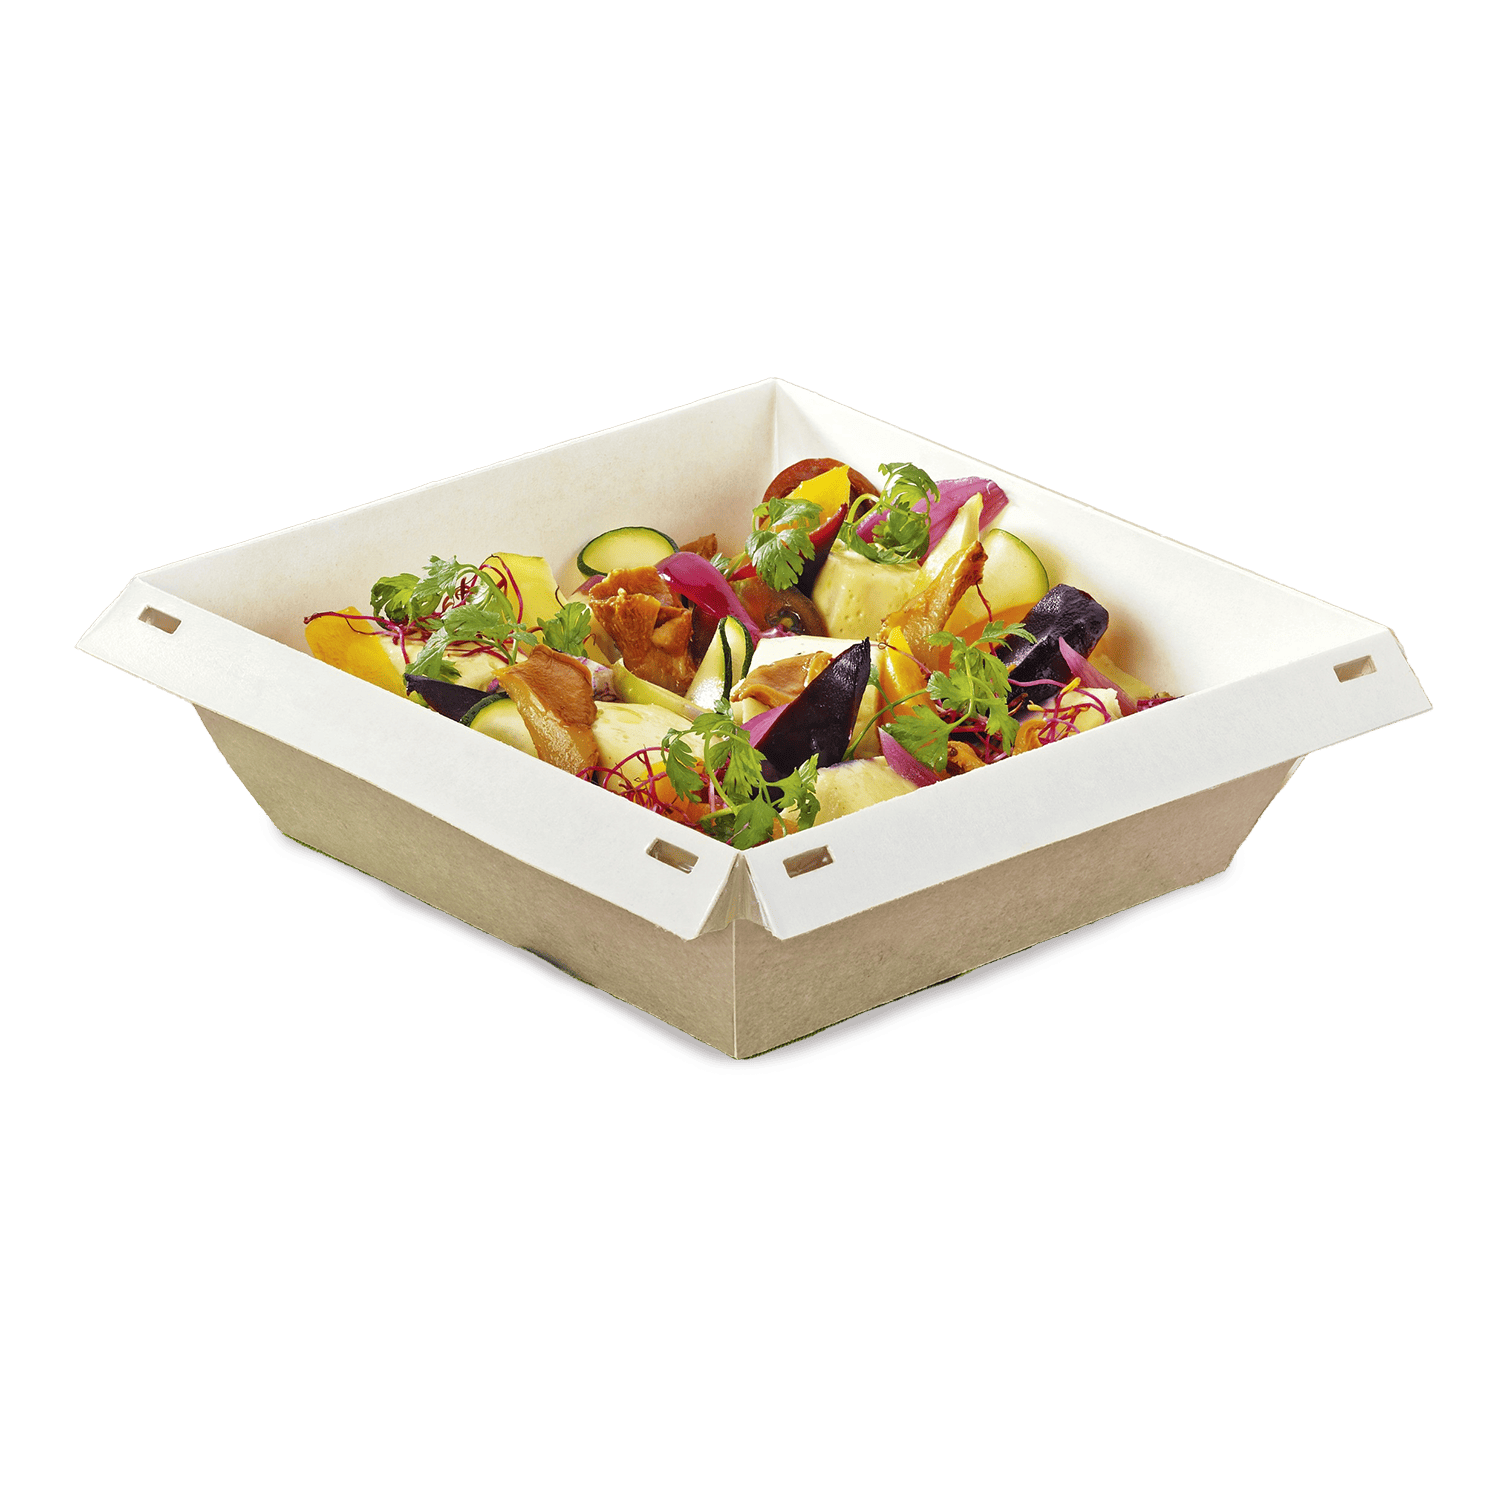 contenitore per alimenti luxifood in carta naturale